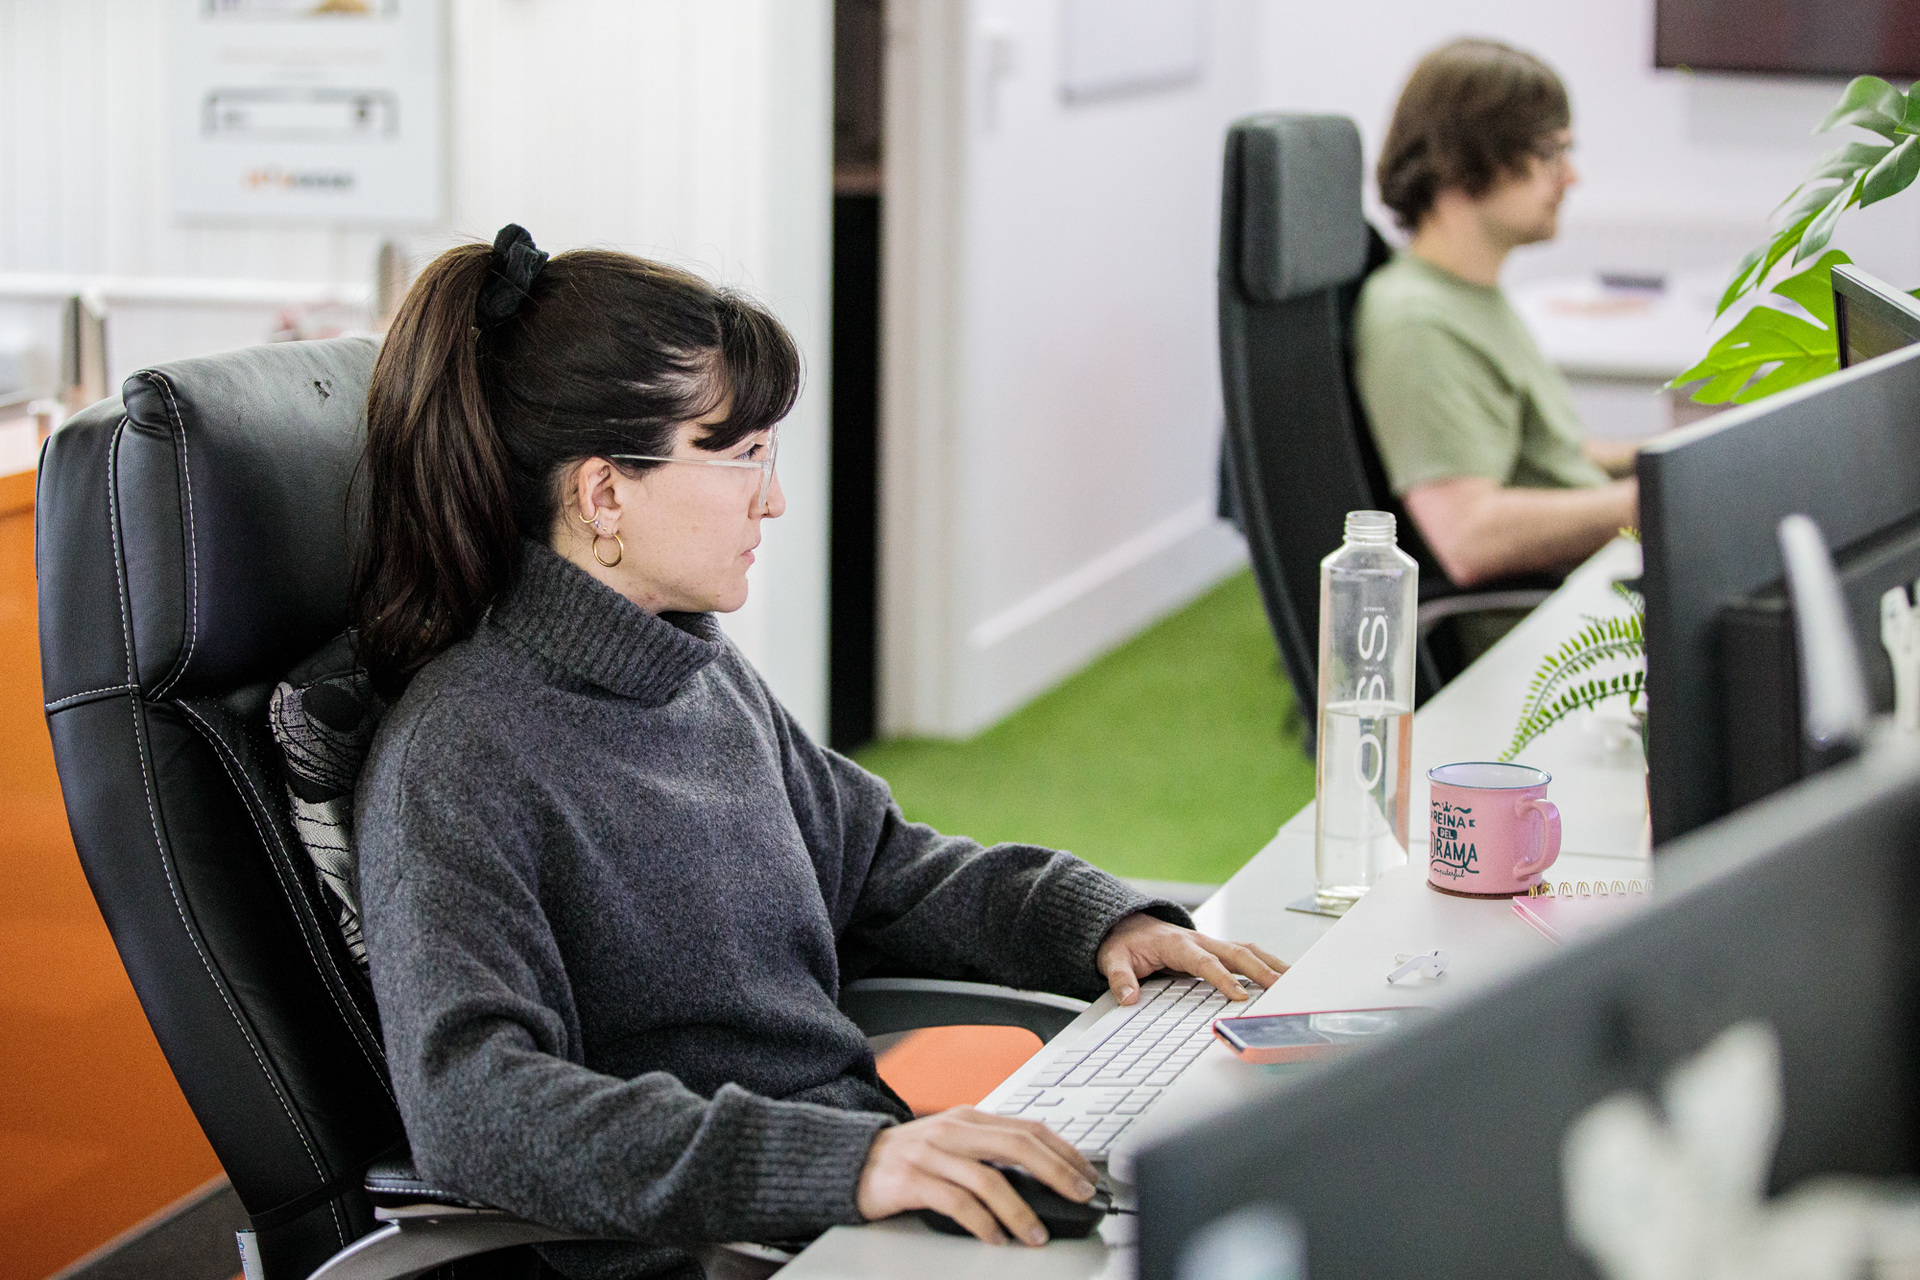 A website designer sat at her desk working on her desktop computer